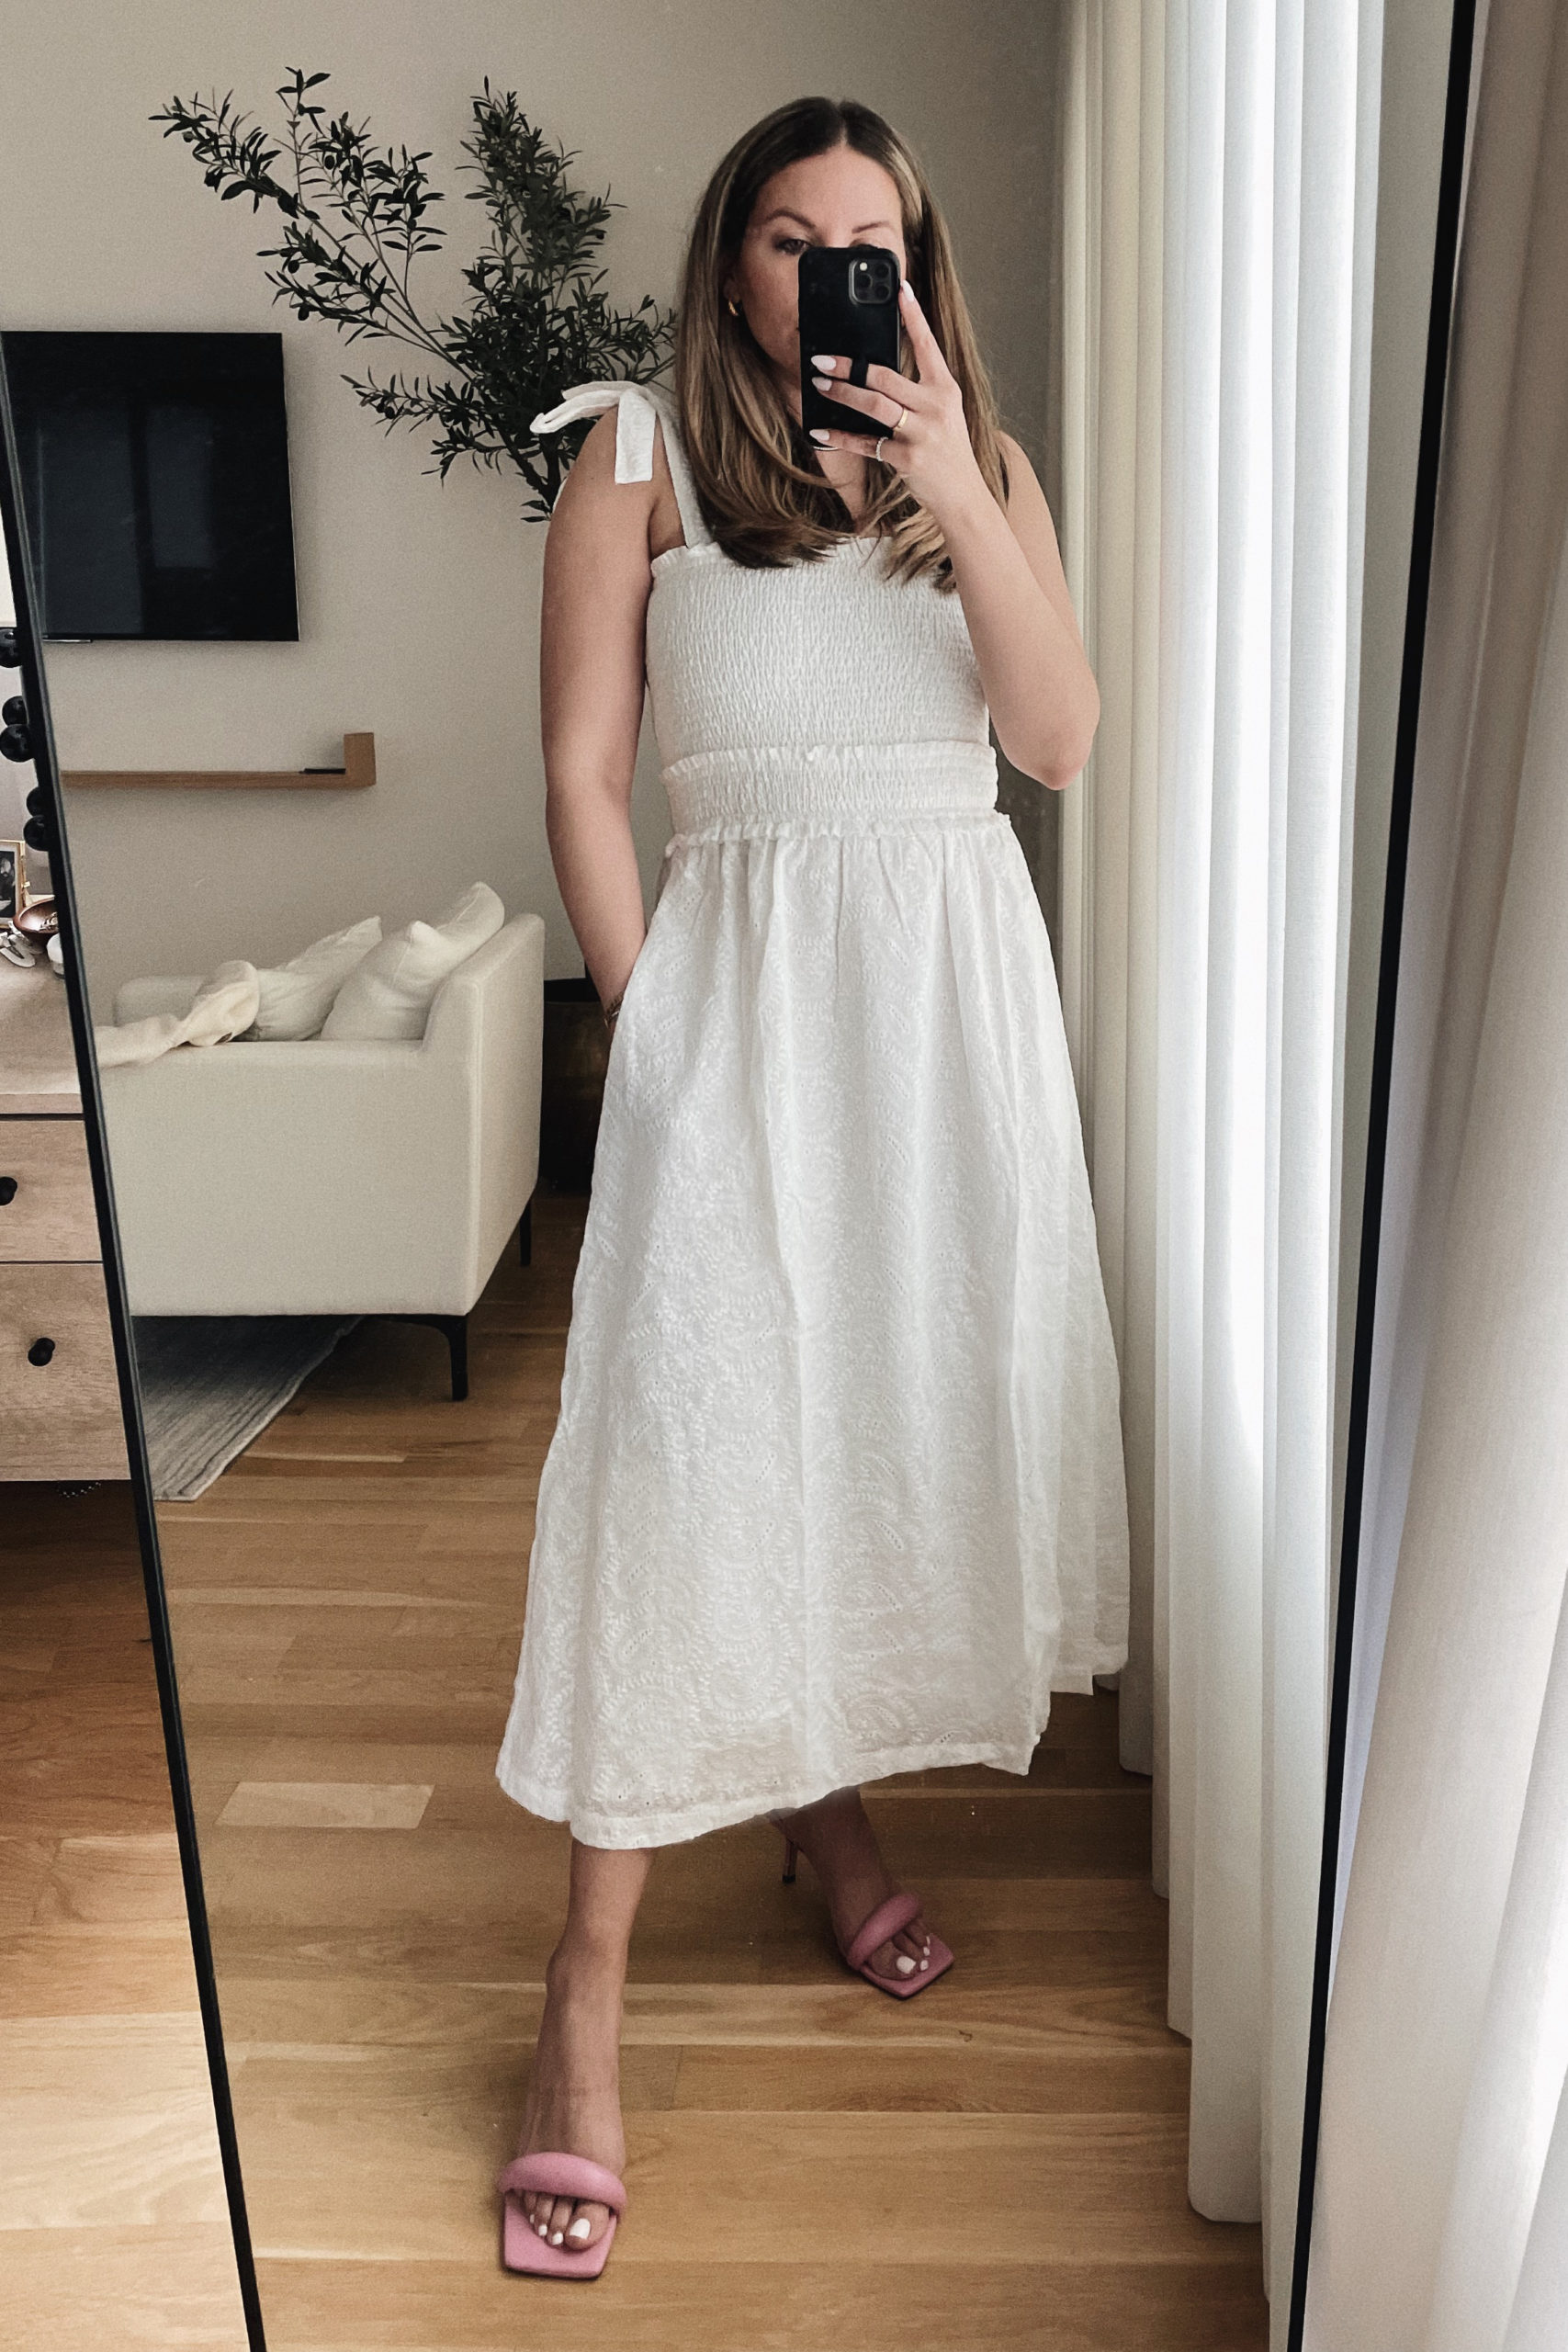 https://www.theteacherdiva.com/wp-content/media/White-Smocked-Dress-1-scaled.jpg